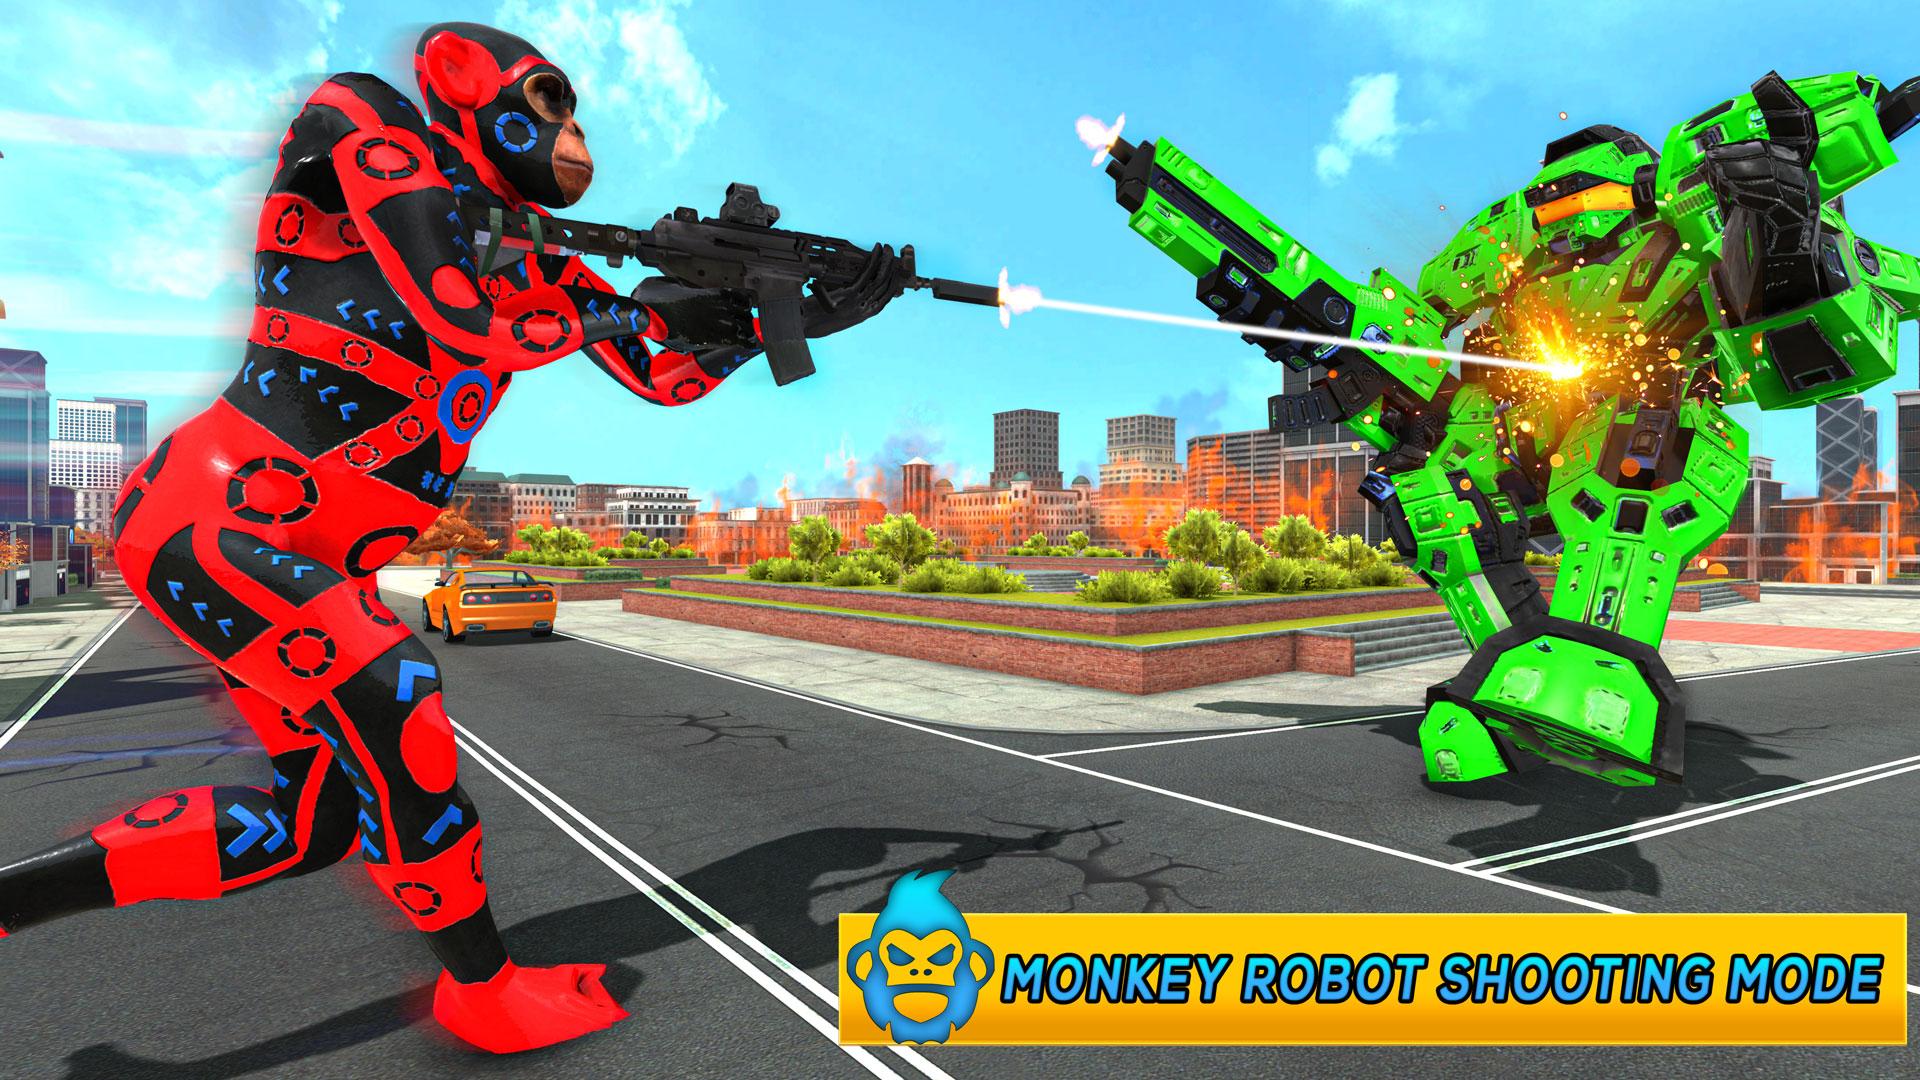 Monkey Car Robot Transformation Game 1.0 Screenshot 1